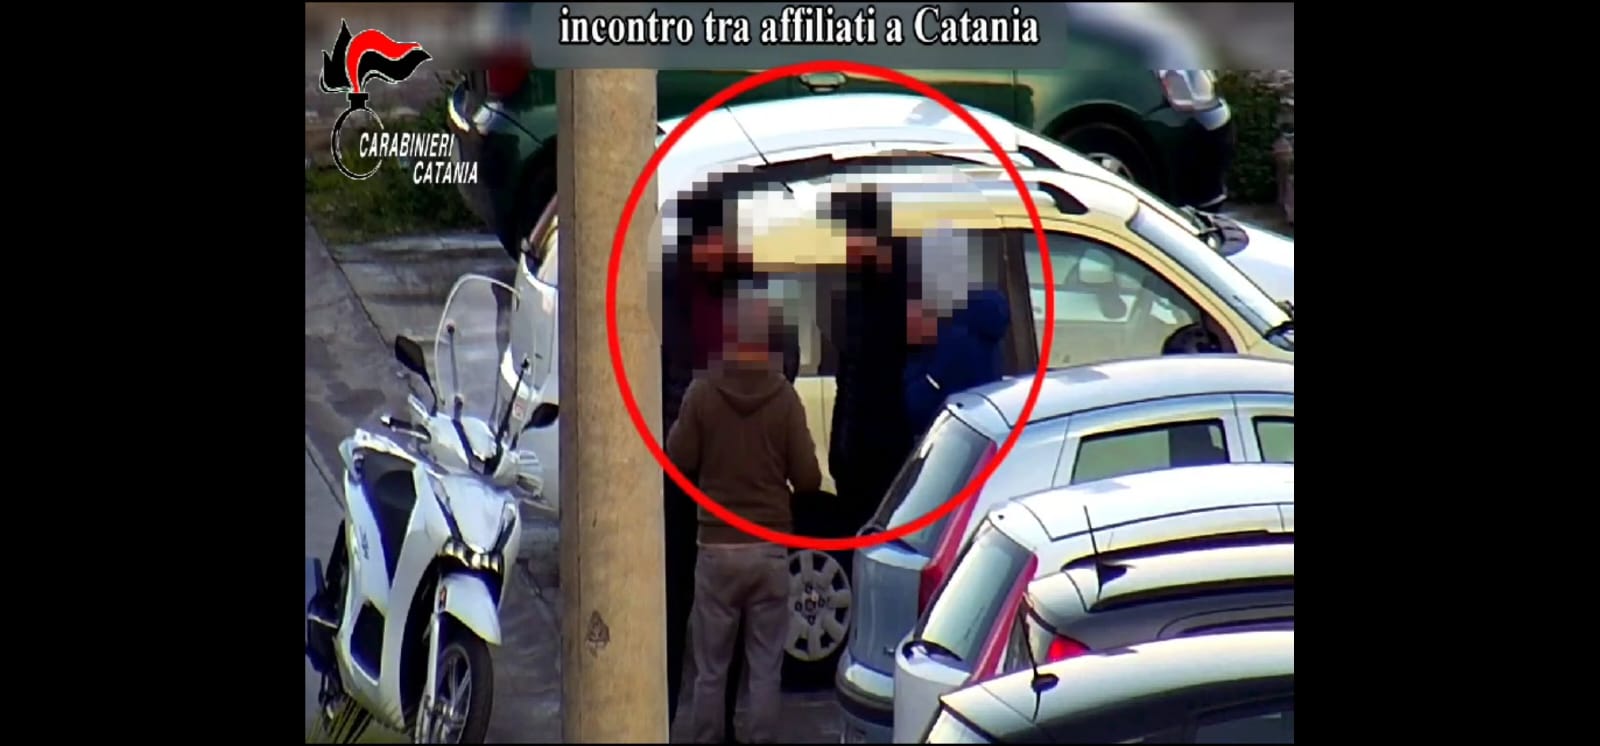 A Catania, sventata guerra di mafia tra gruppi criminali